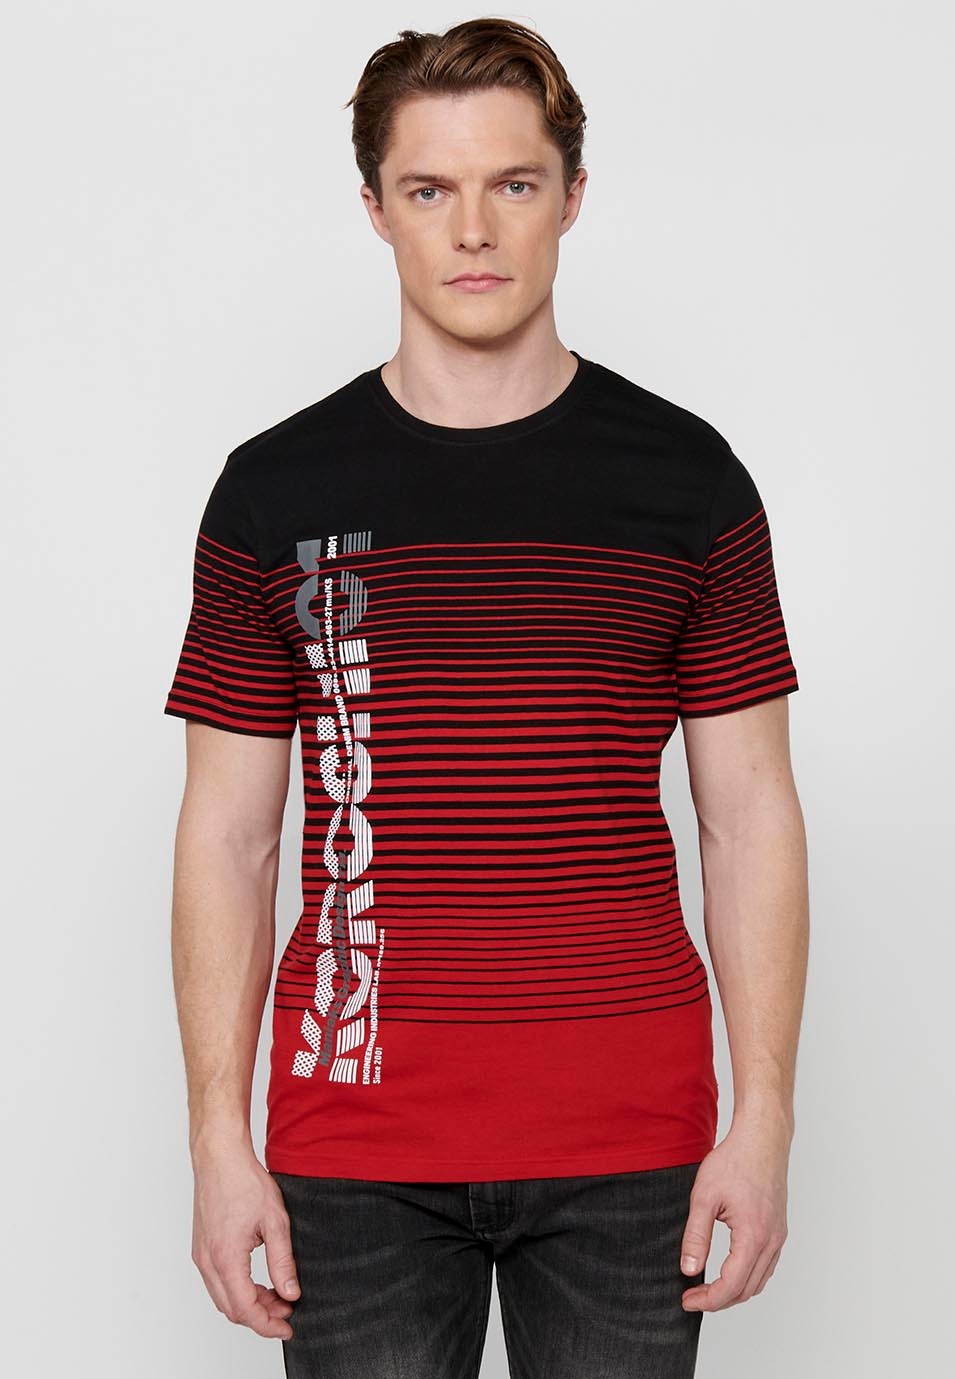 Camiseta de manga corta, estampado degradado a rayas, cuello redondo, color rojo para hombre 1